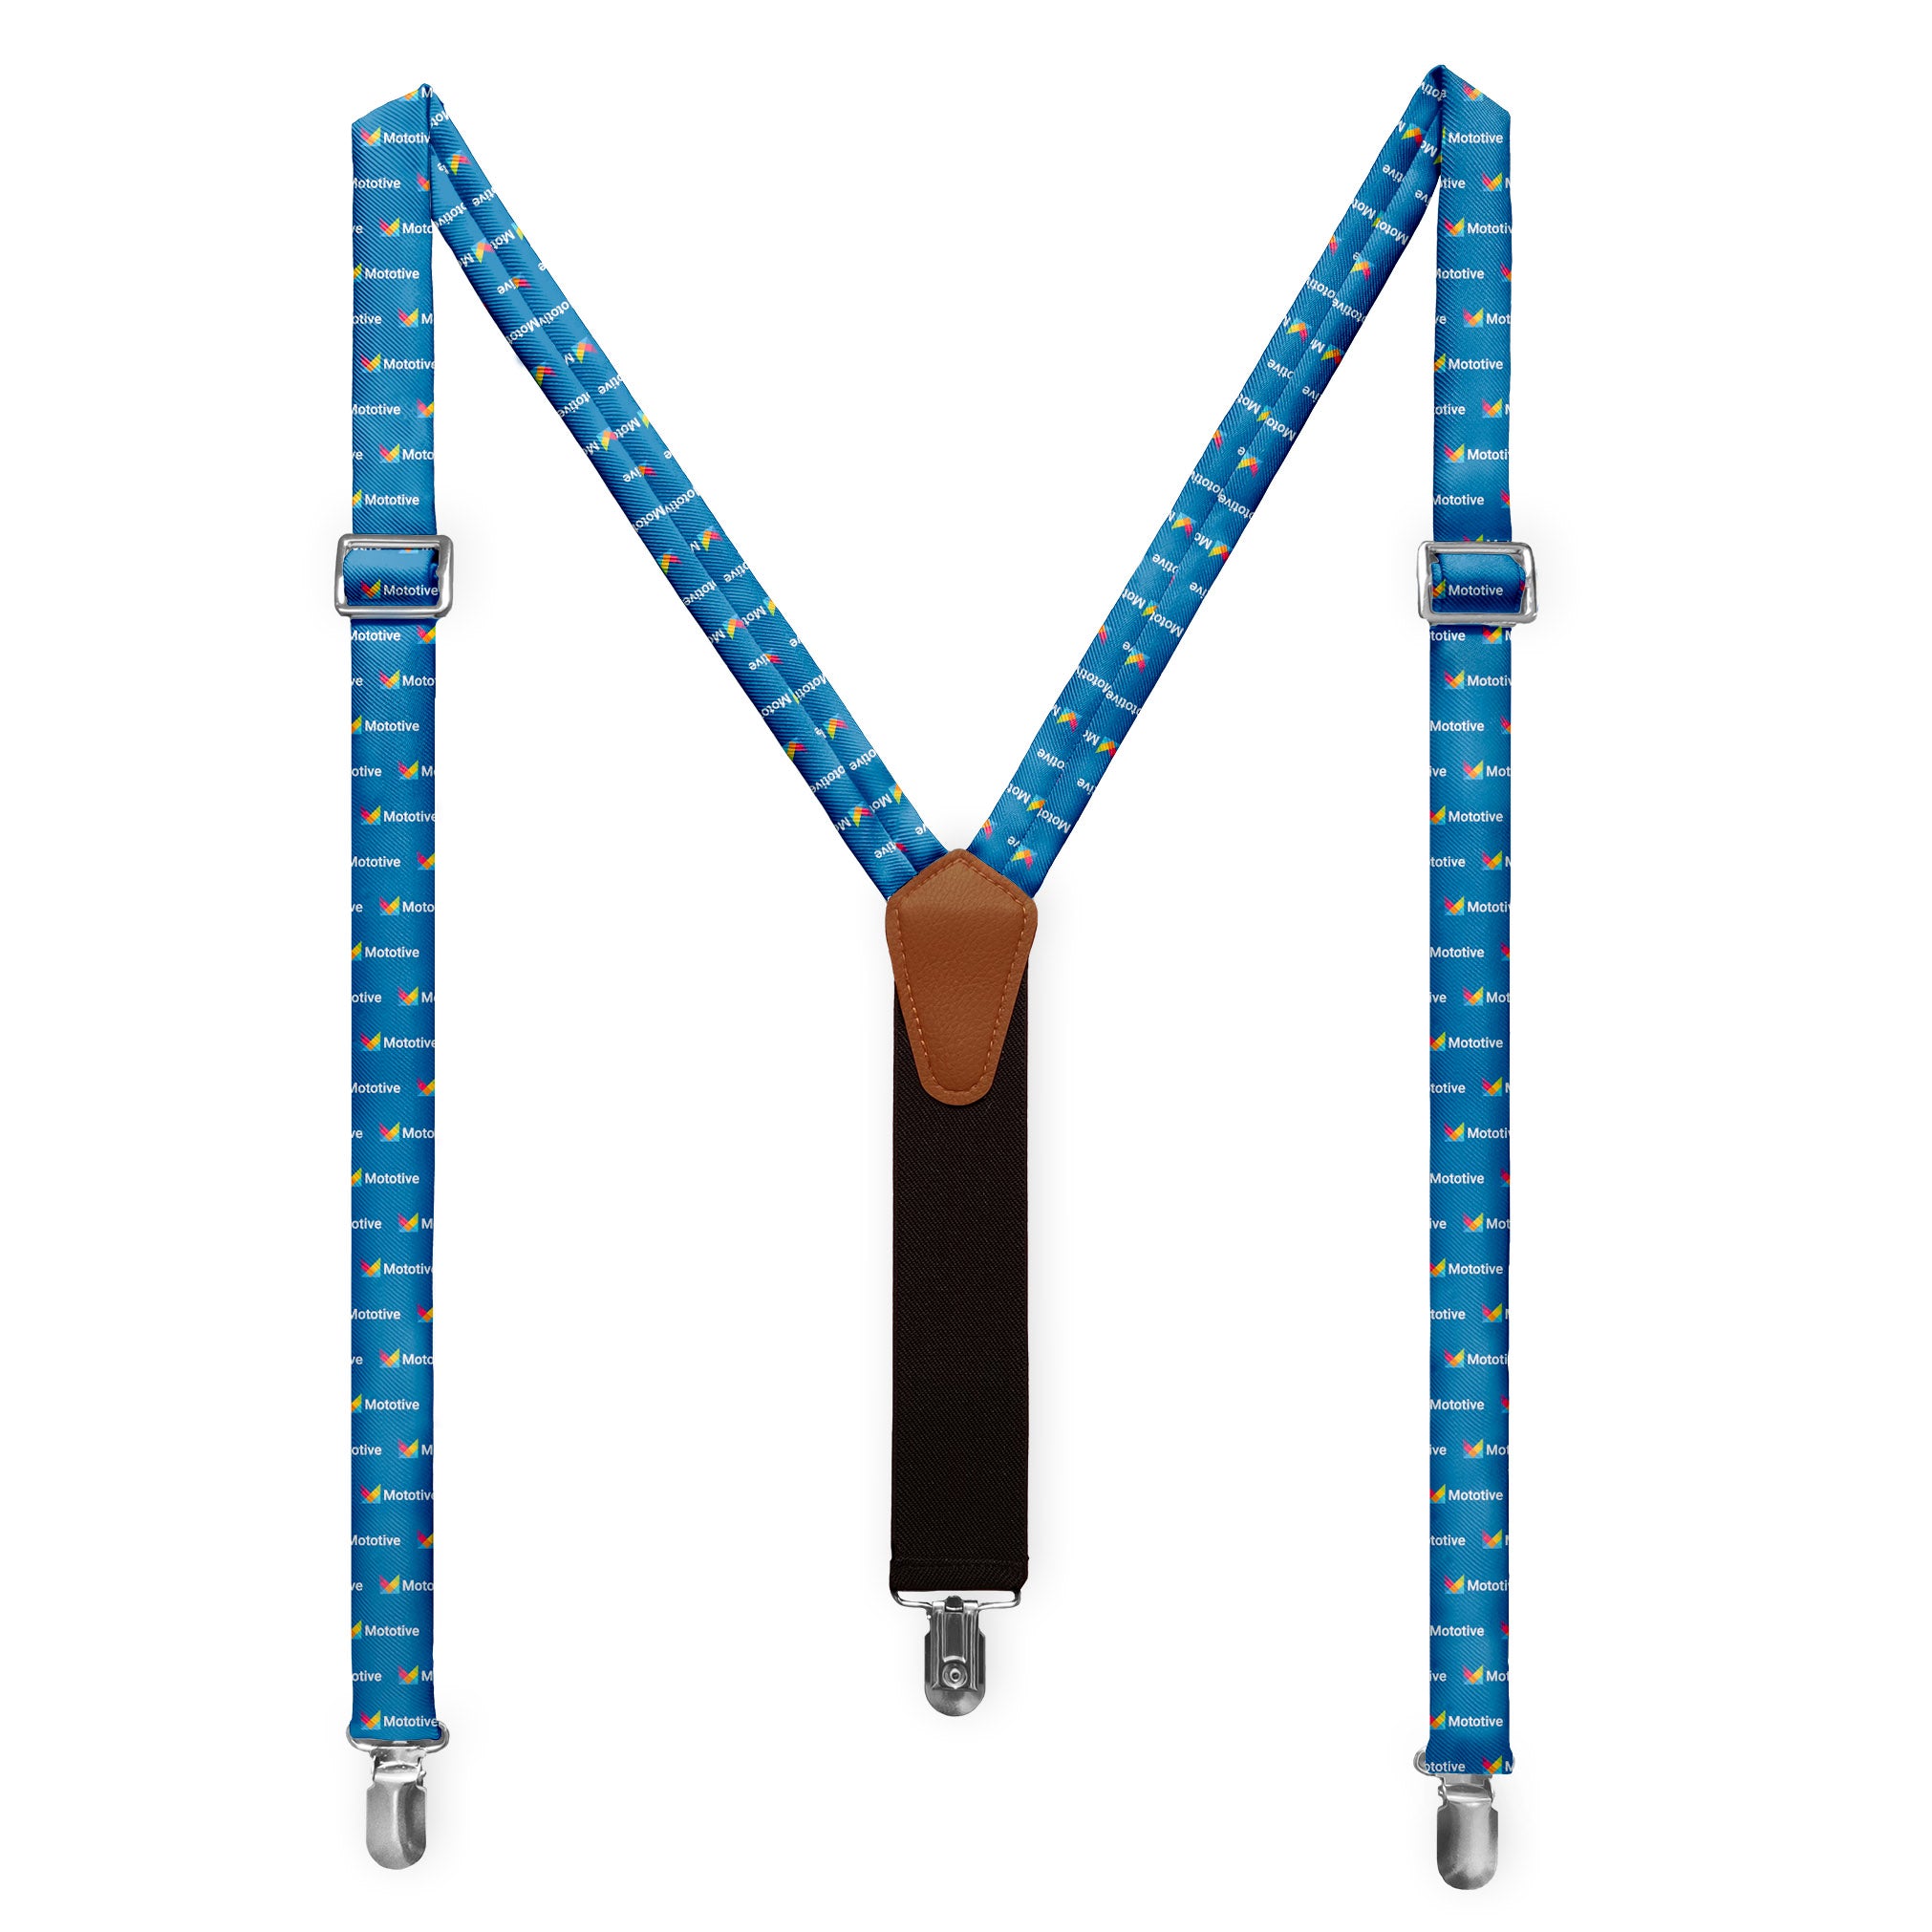 Sample Custom Suspenders